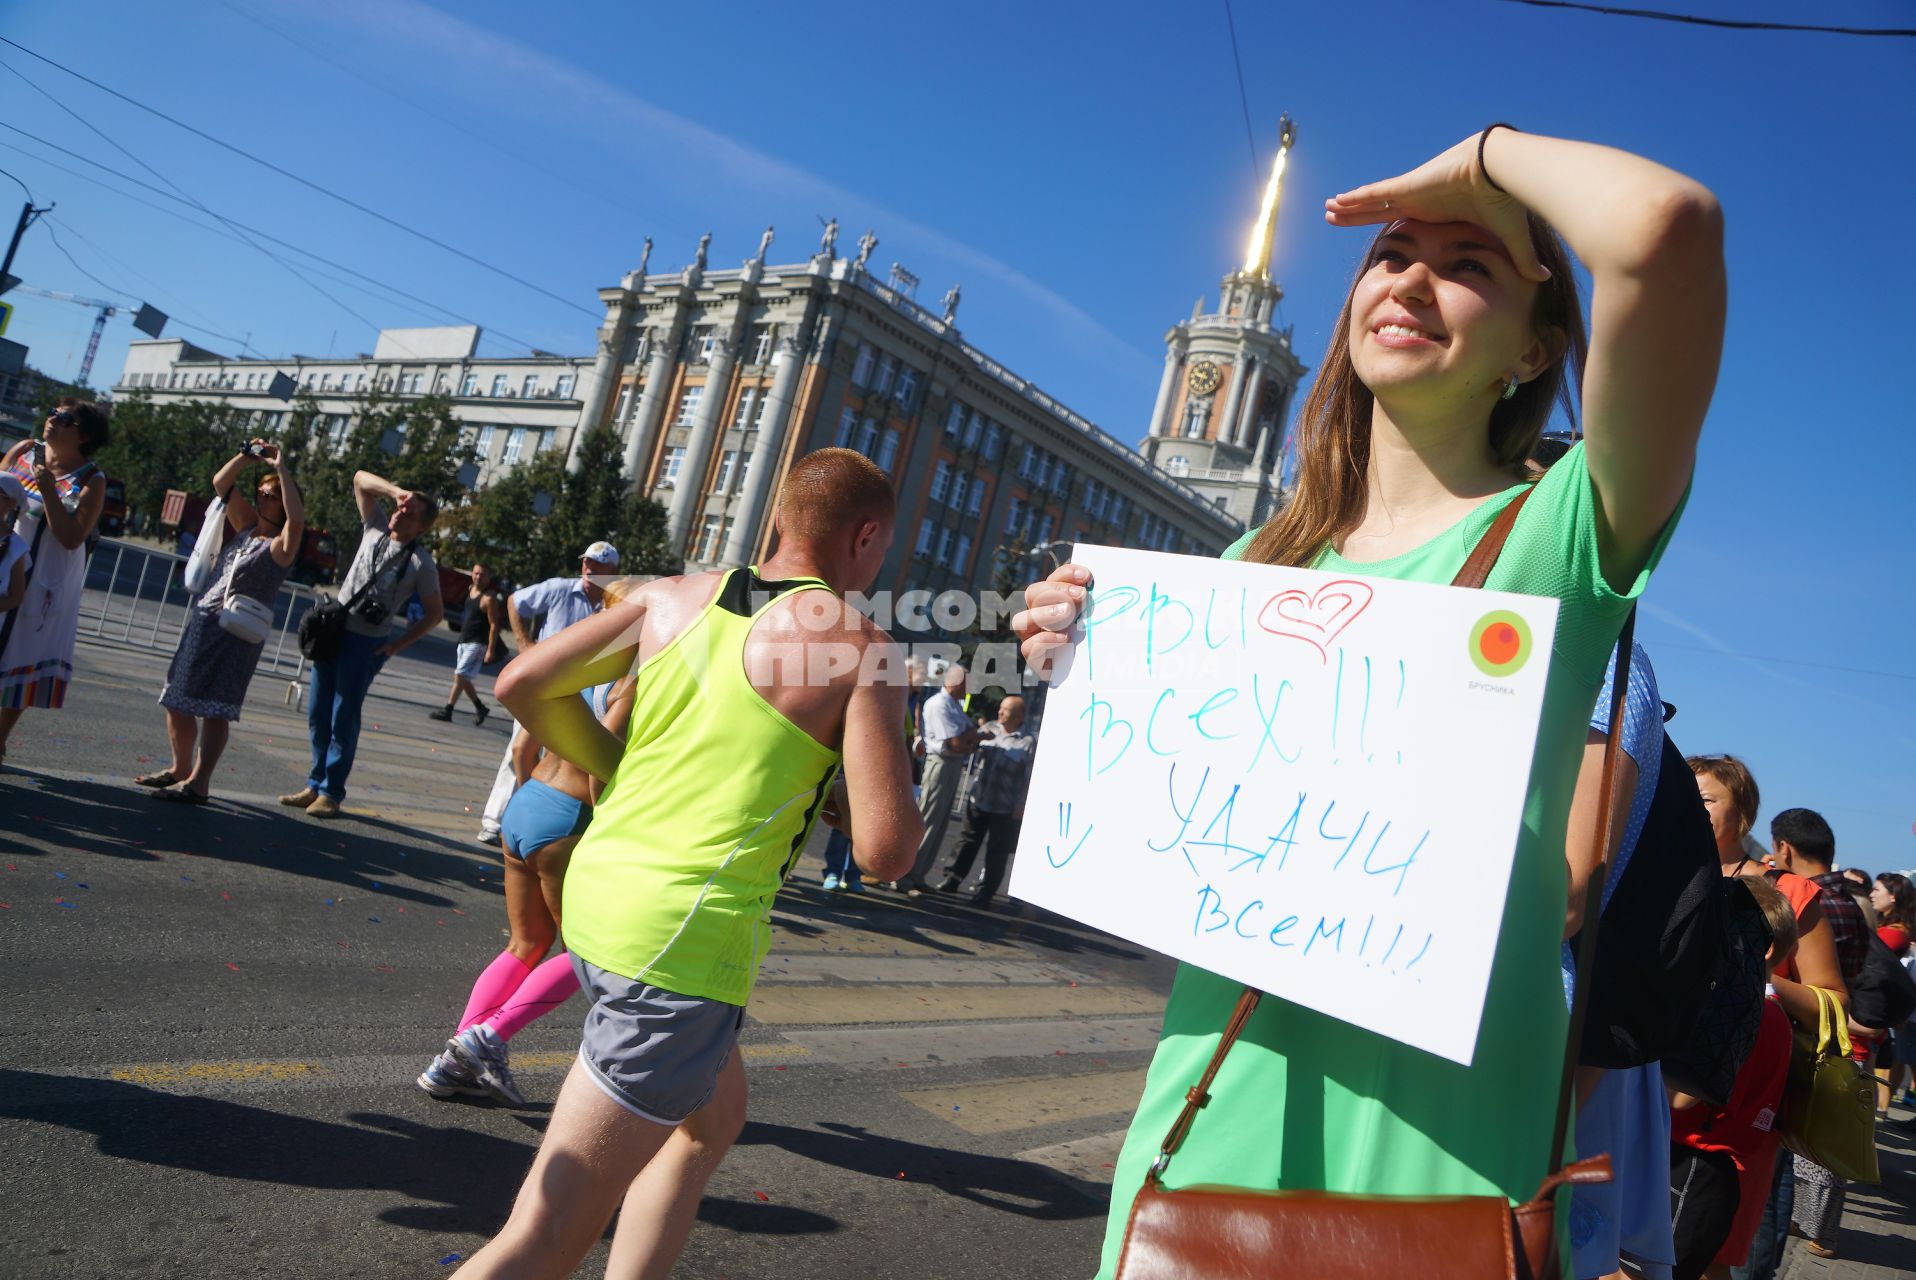 Екатеринбург. Девушка с плакатом \'Рви всех!! Удачи всем\' поддерживает бегунов во время 2-го международного марафона \'Европа-Азия\'